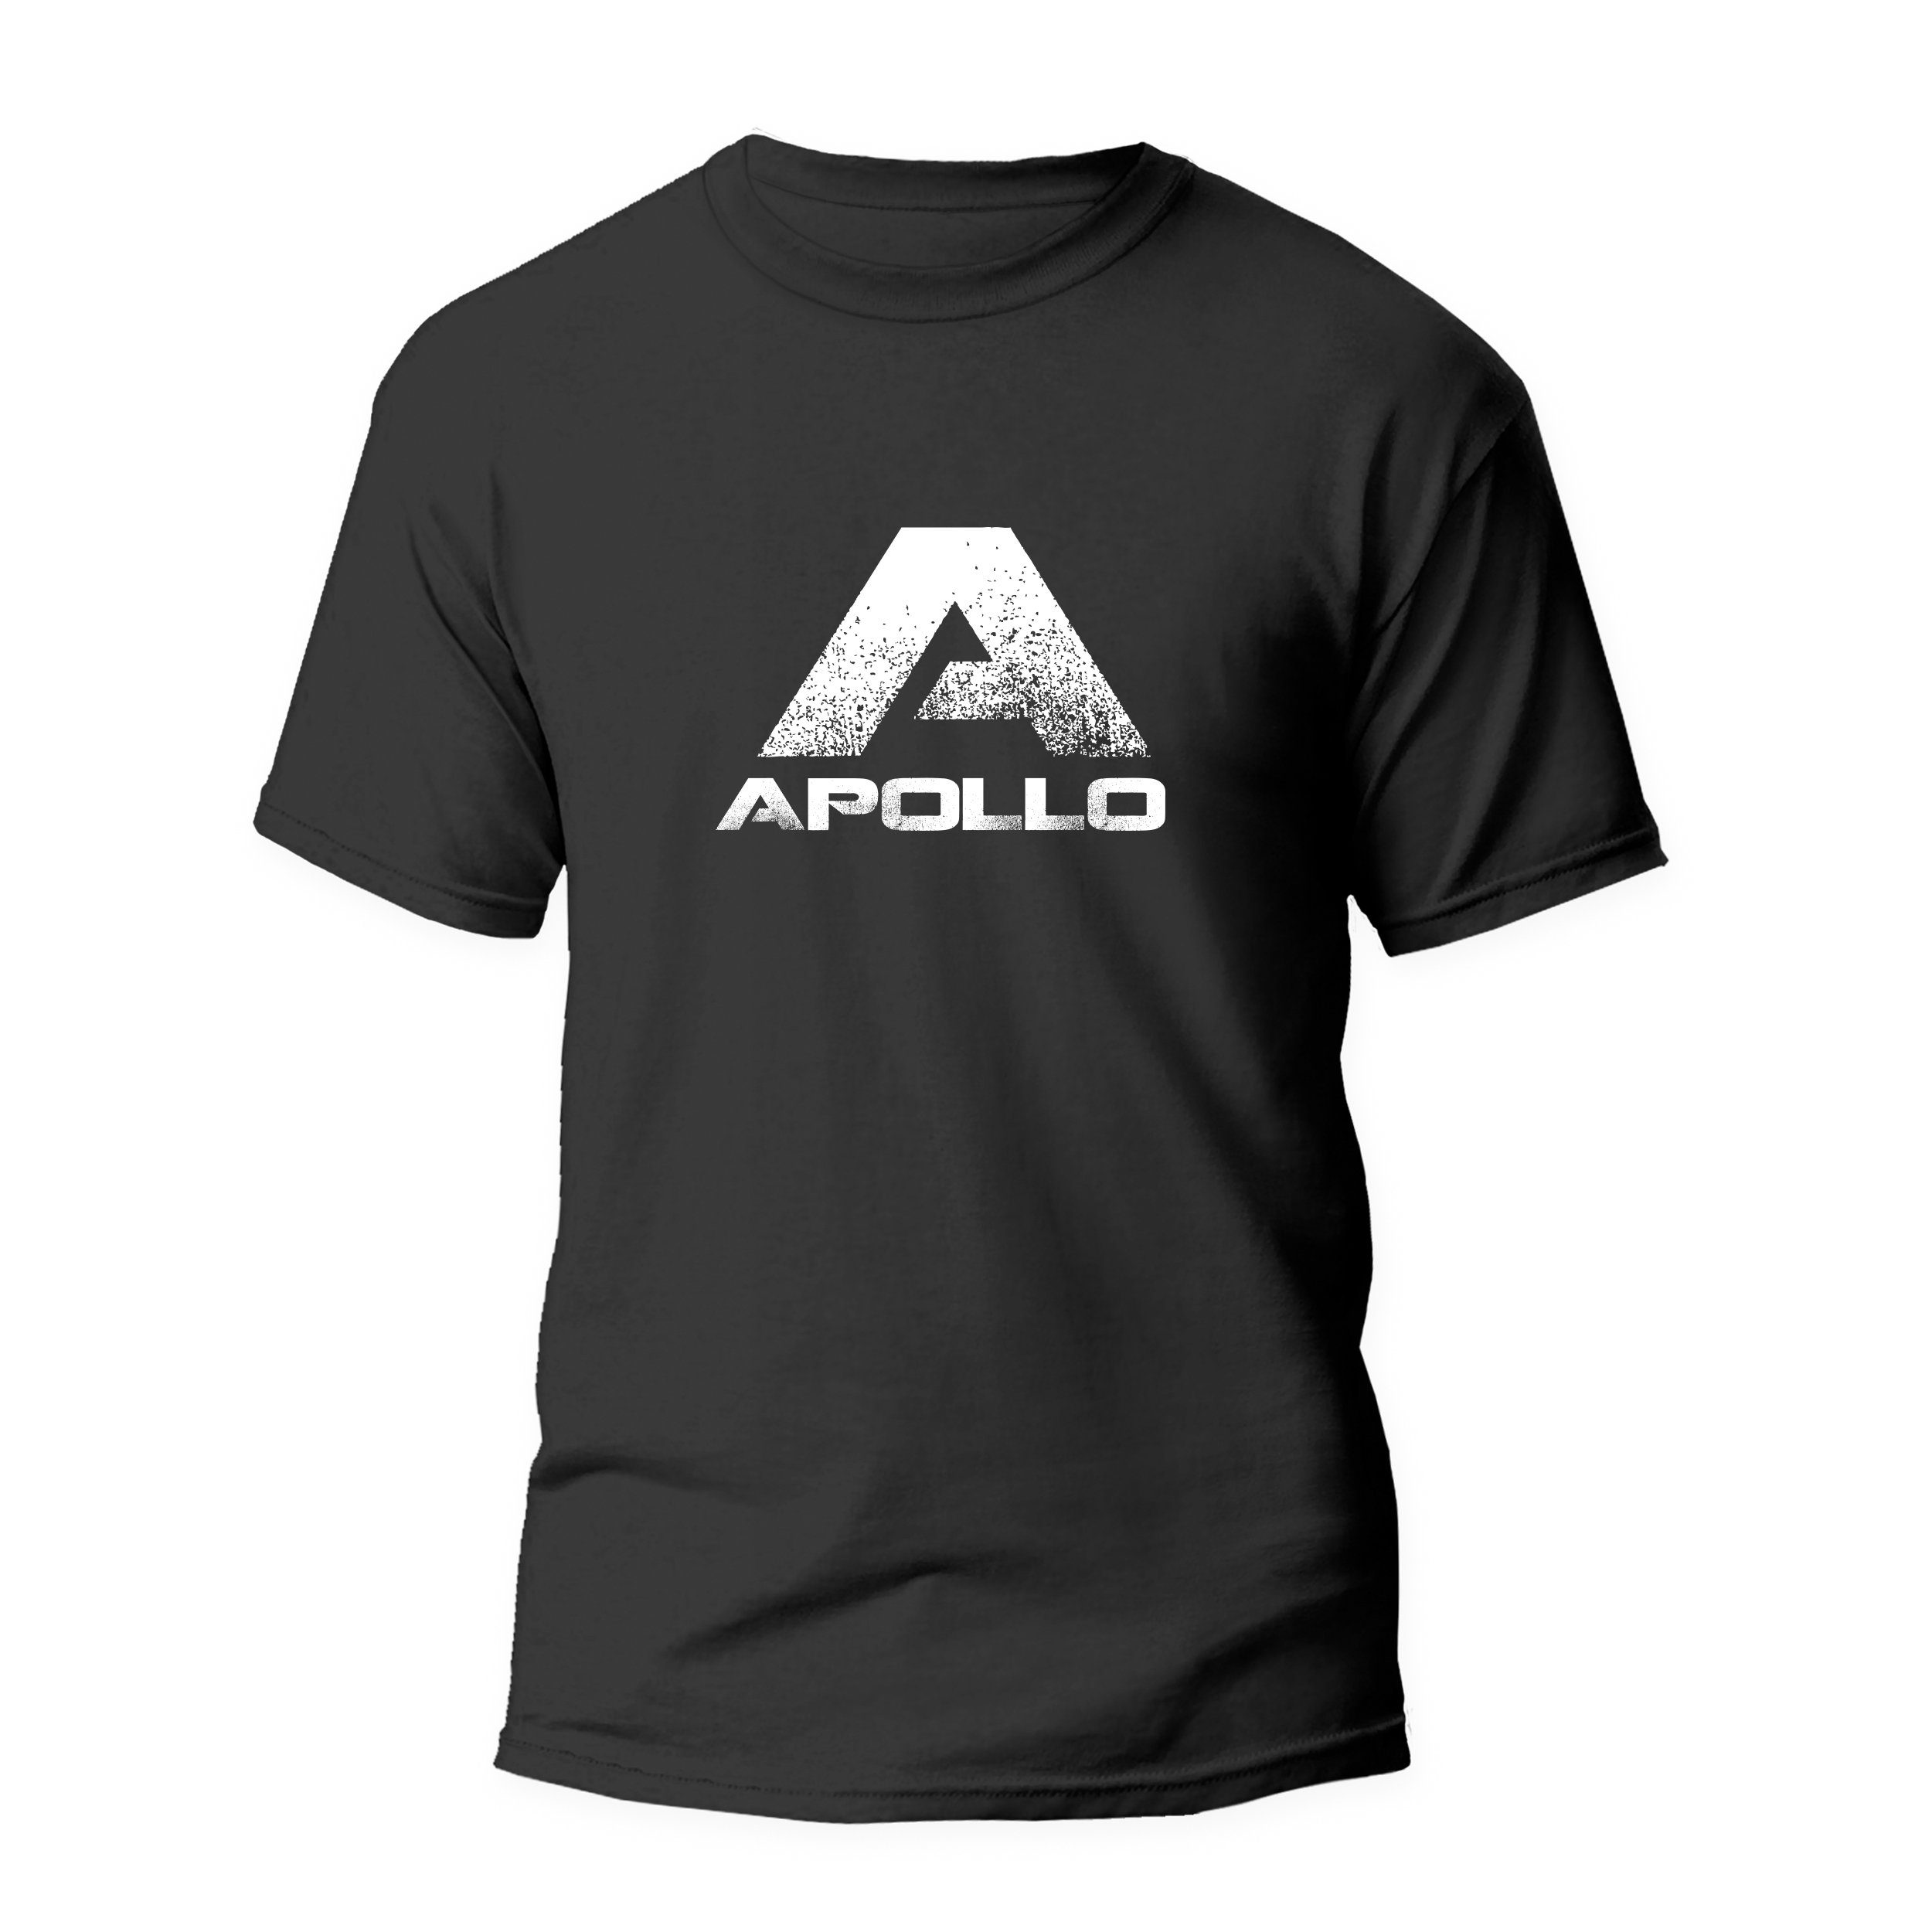 Apollo T-Shirt Sportshirt, atmungsaktives, kurzarmiges Shirt, Unisex, Größe S-XXL bequem, aus reiner Baumwolle